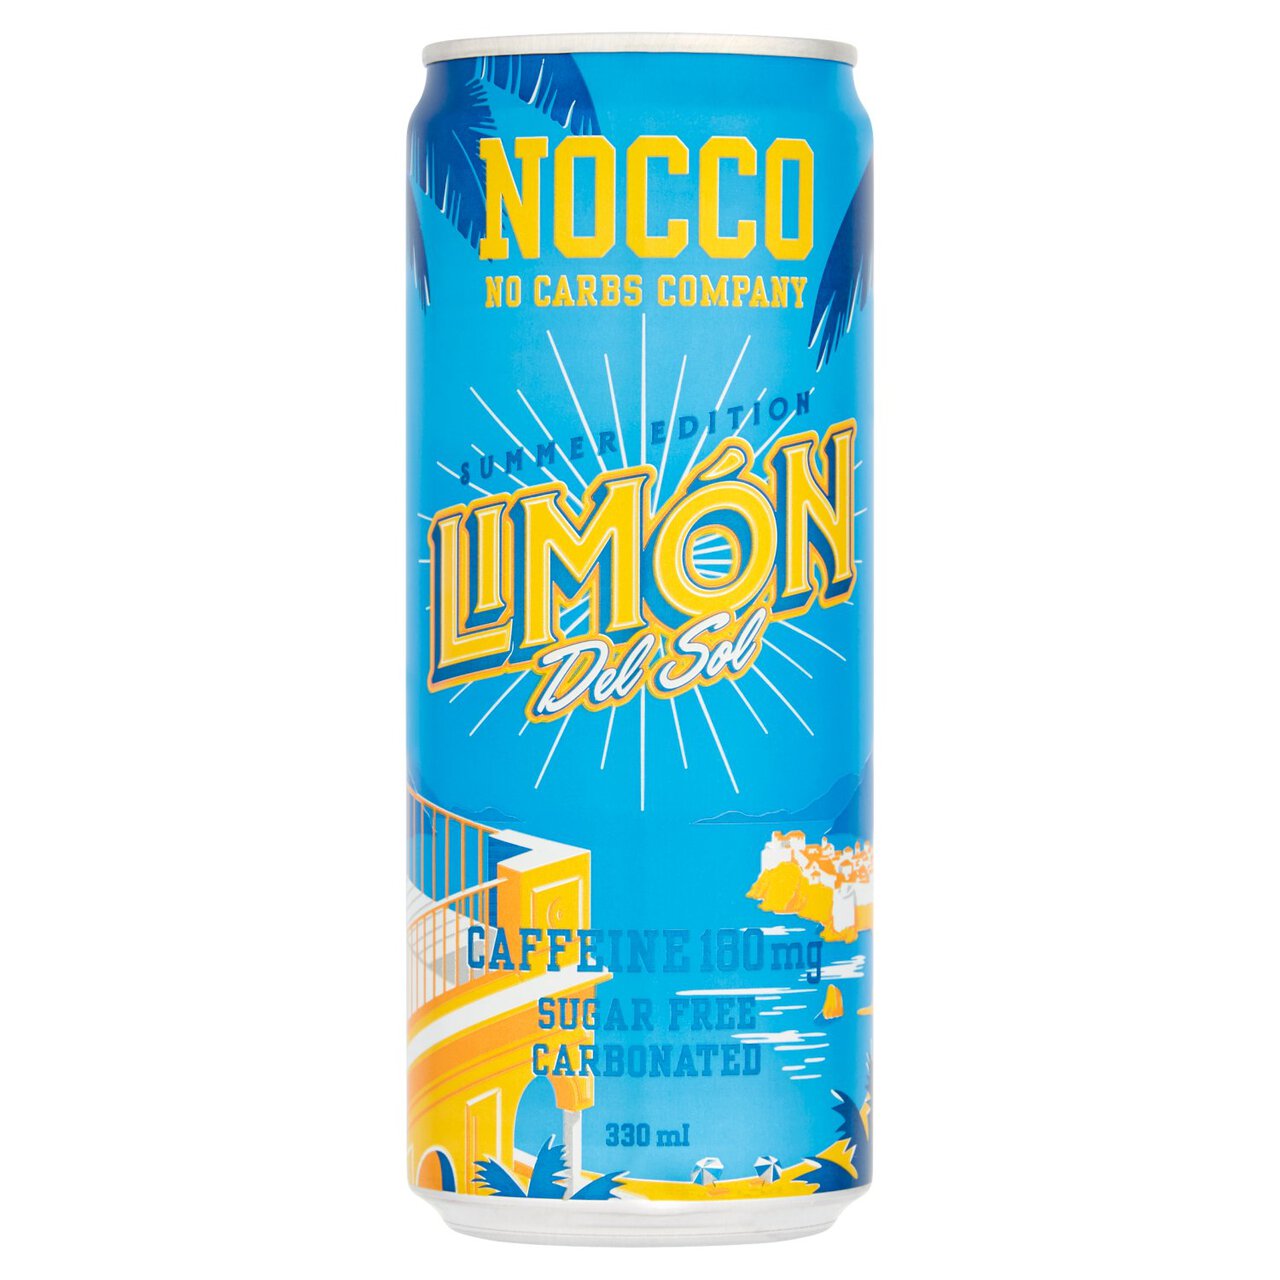 NOCCO Limon Del Sol 330ml